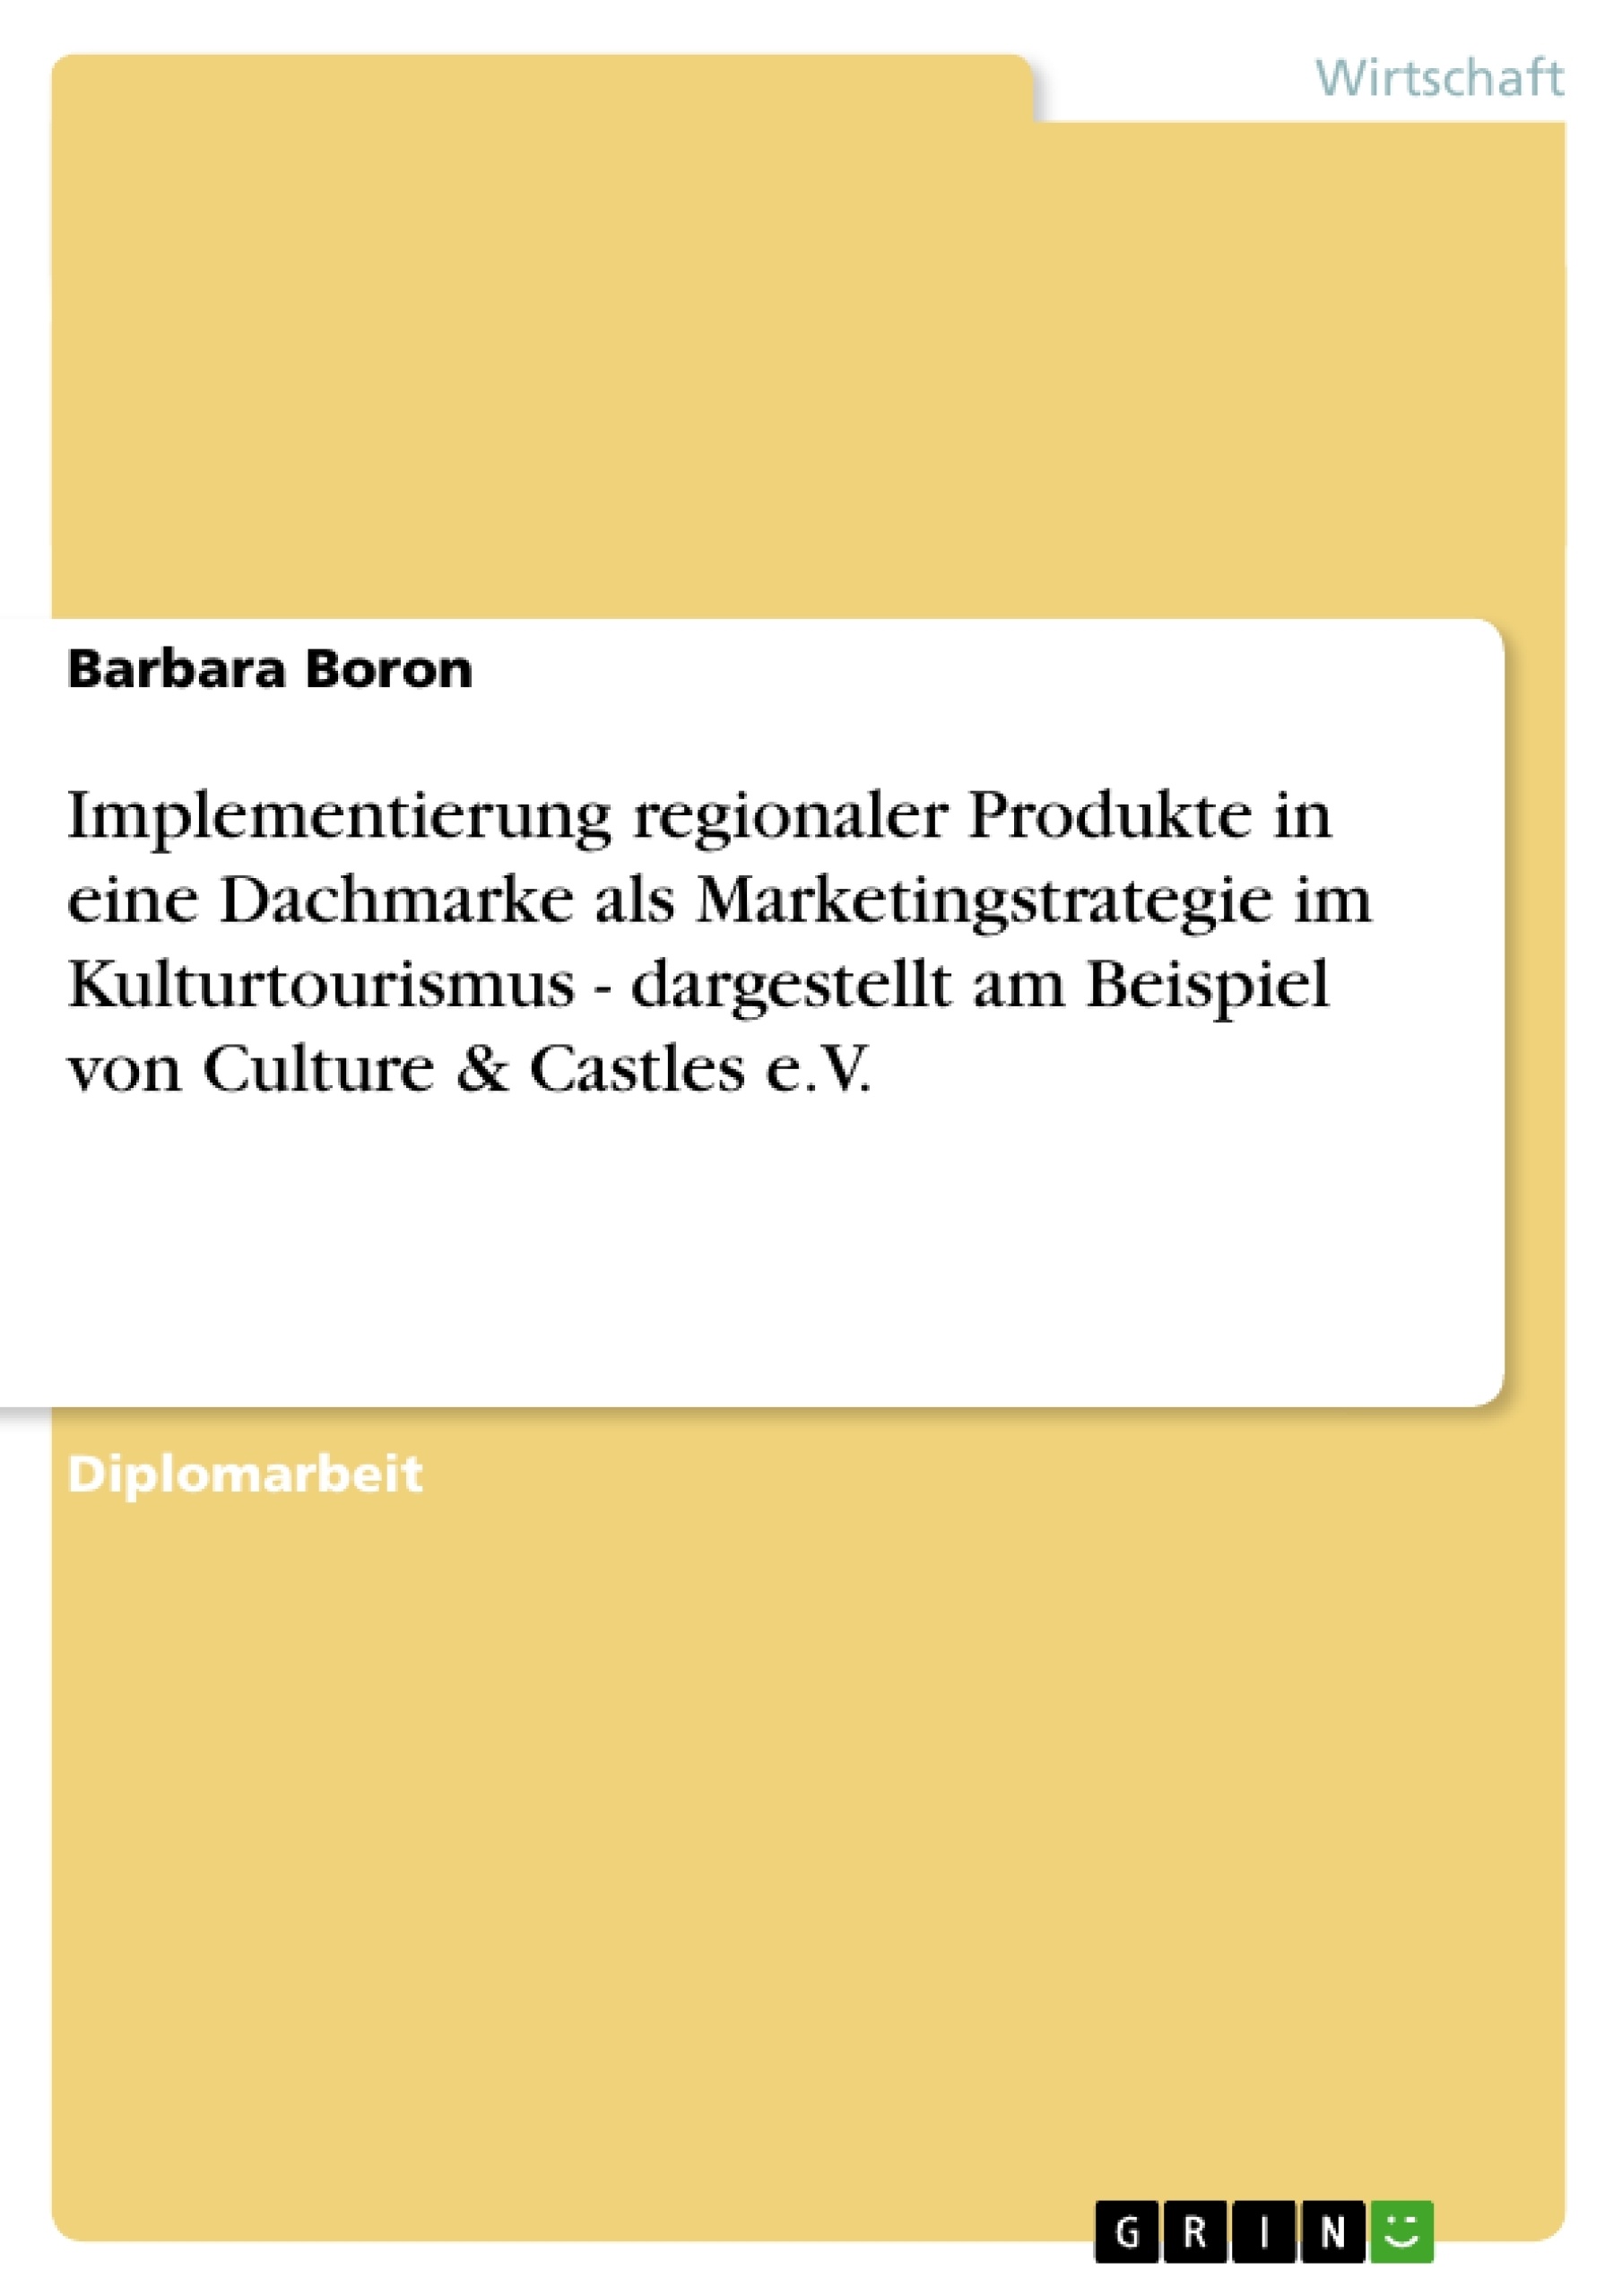 Title: Implementierung regionaler Produkte in eine Dachmarke als Marketingstrategie im Kulturtourismus - dargestellt am Beispiel von Culture & Castles e.V.